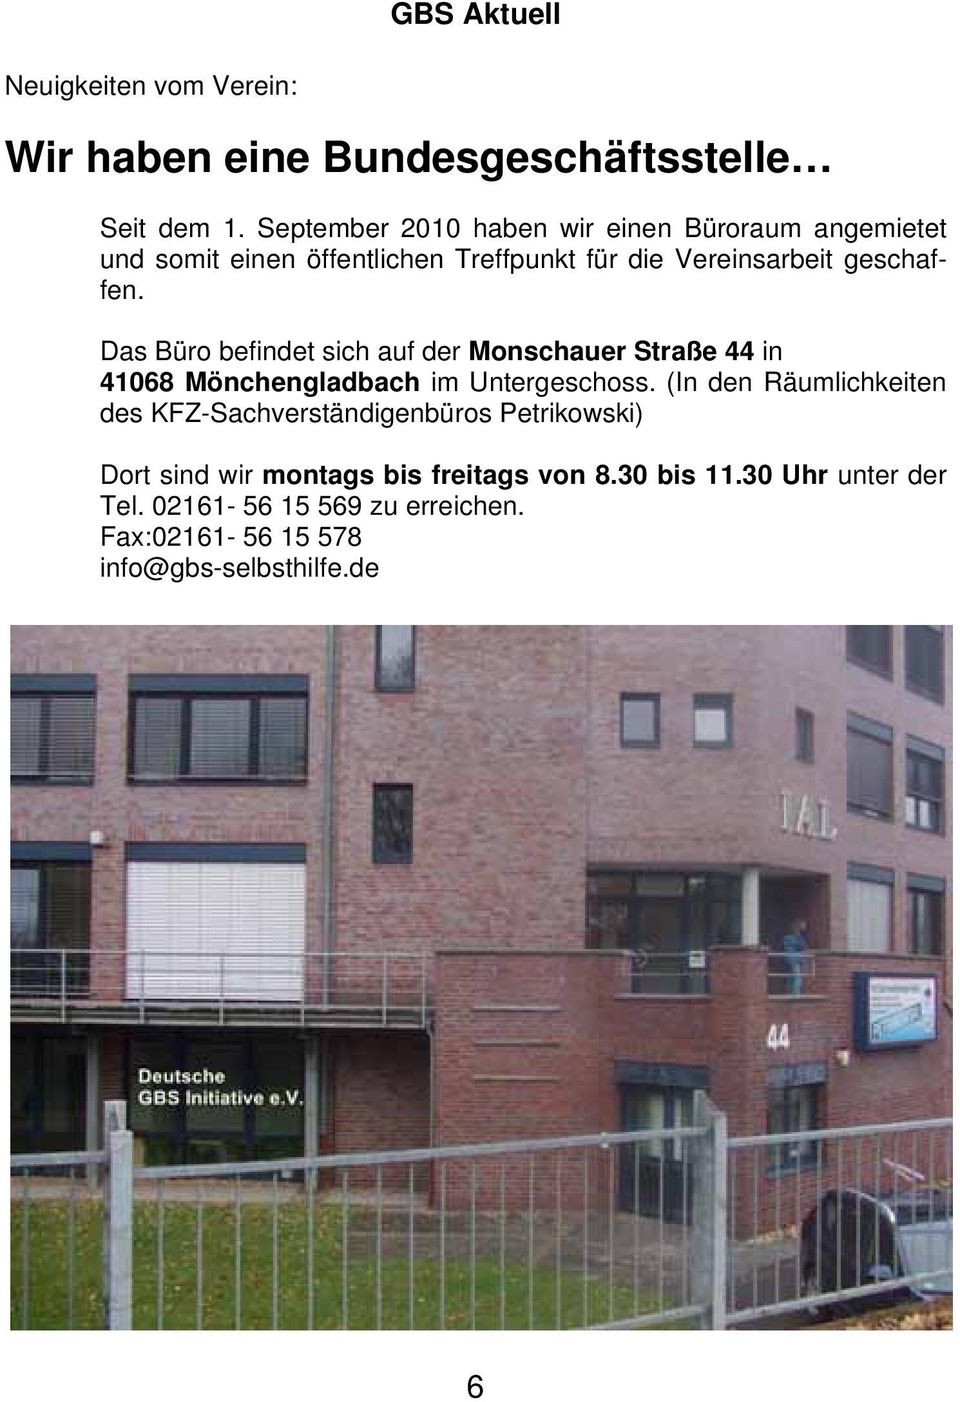 Das Büro befindet sich auf der Monschauer Straße 44 in 41068 Mönchengladbach im Untergeschoss.